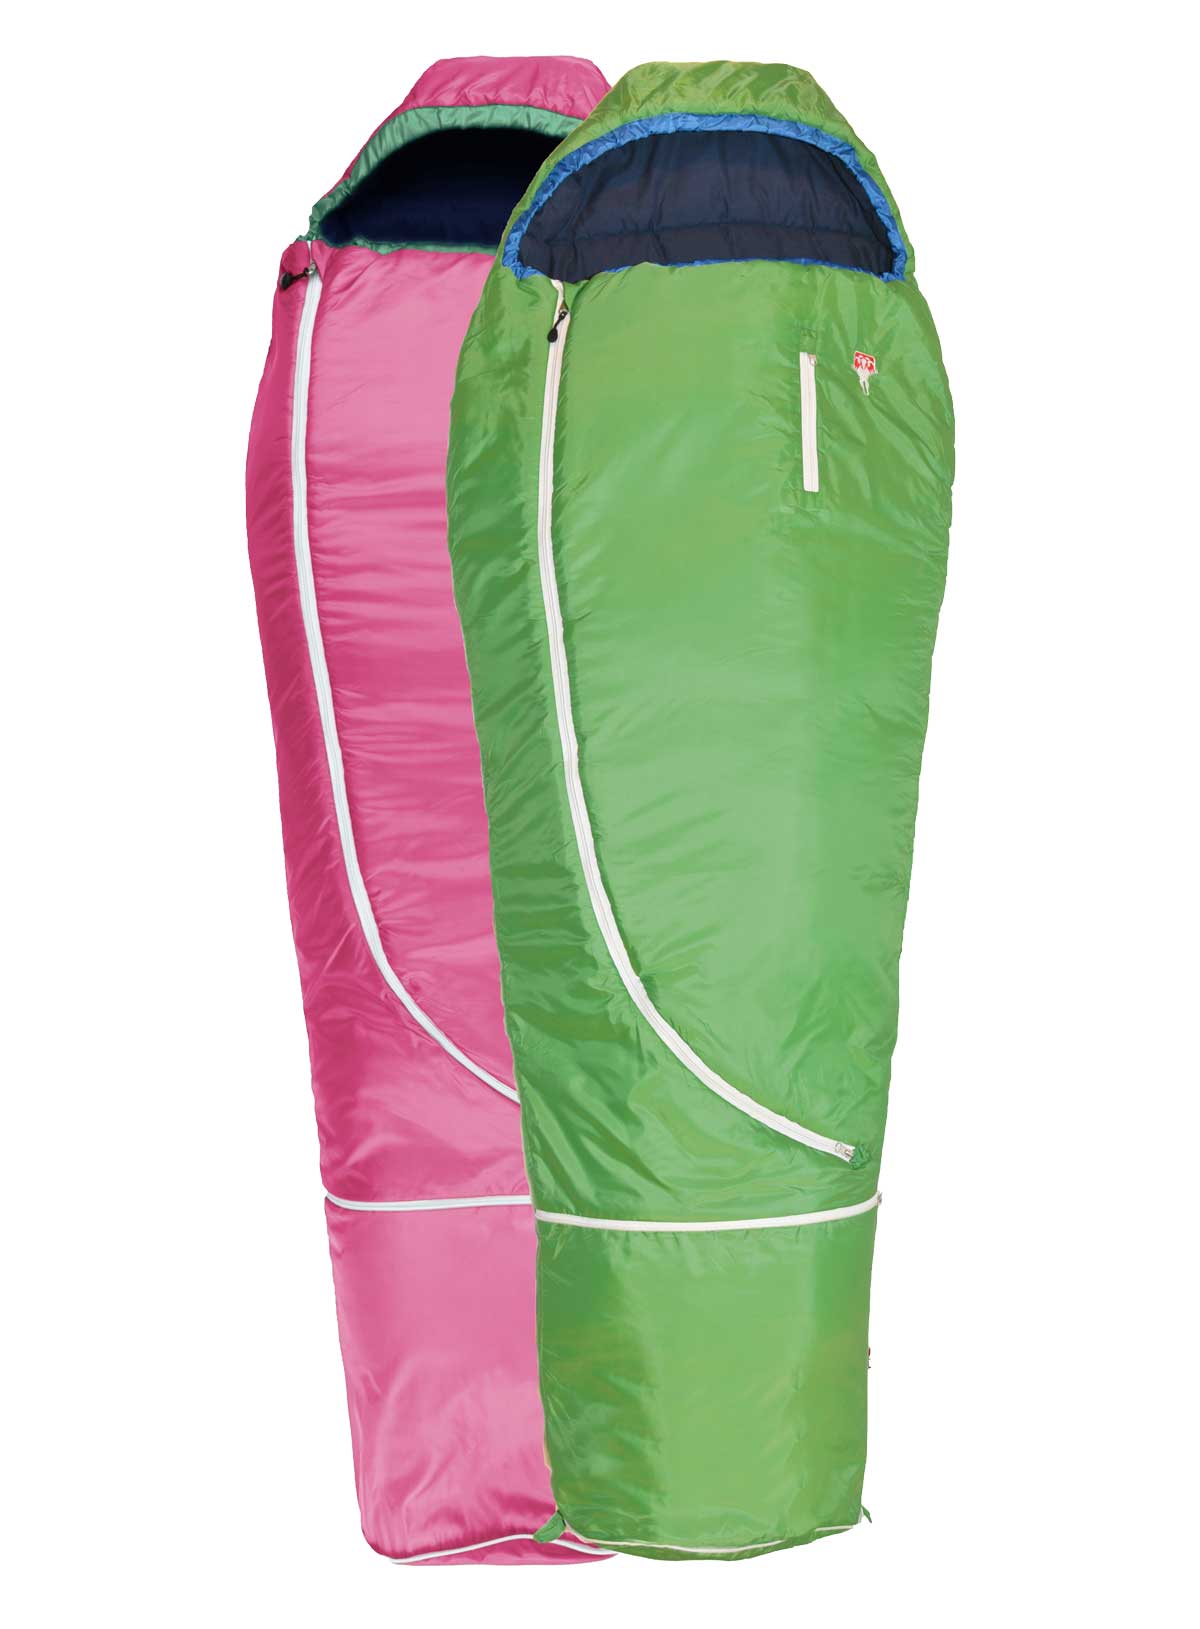 En rosa och grön sovsäck för barn från Gruezi Bag, fylld med ull